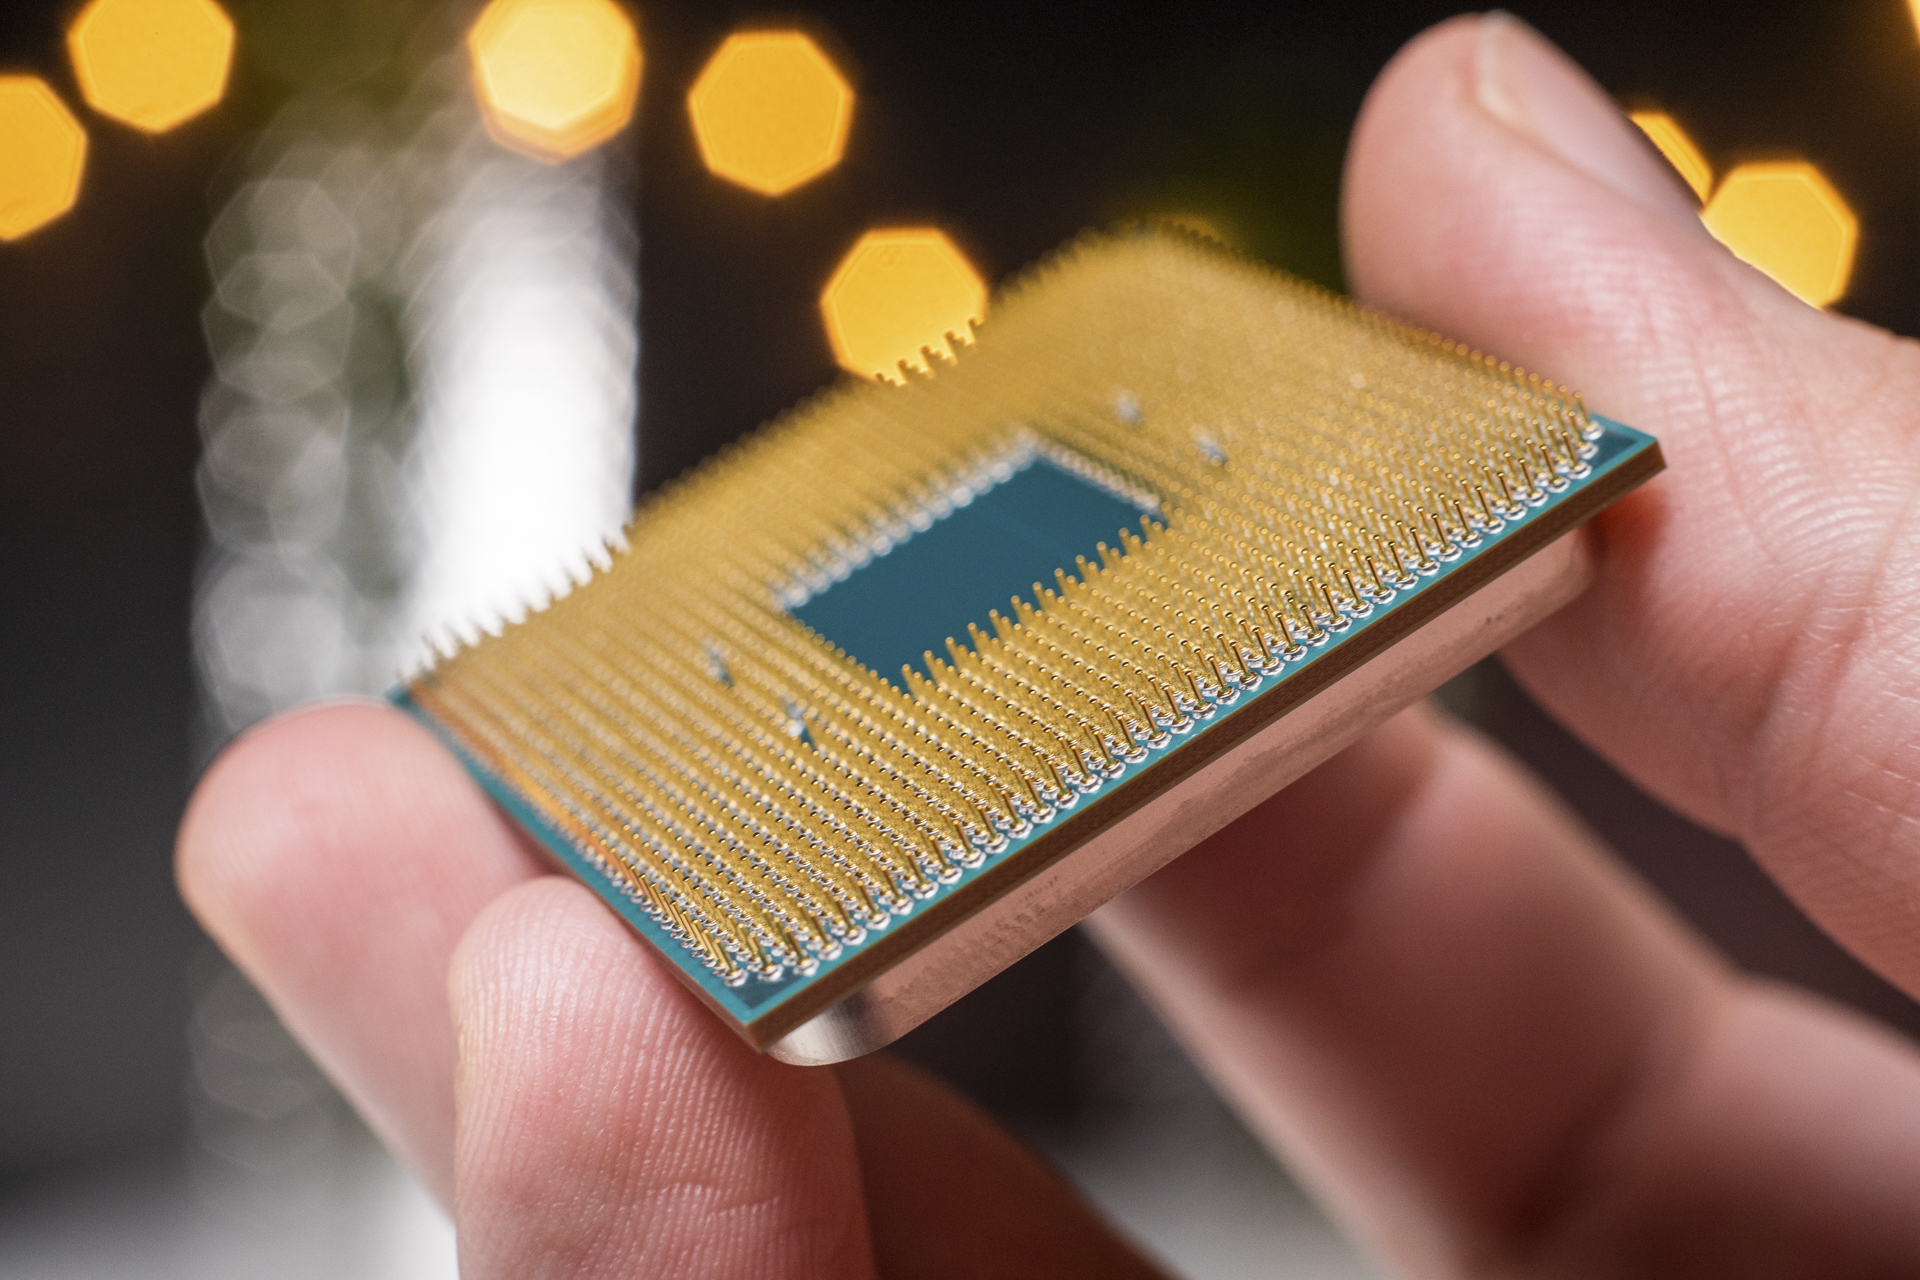 AMD Ryzen 9 3900x pins